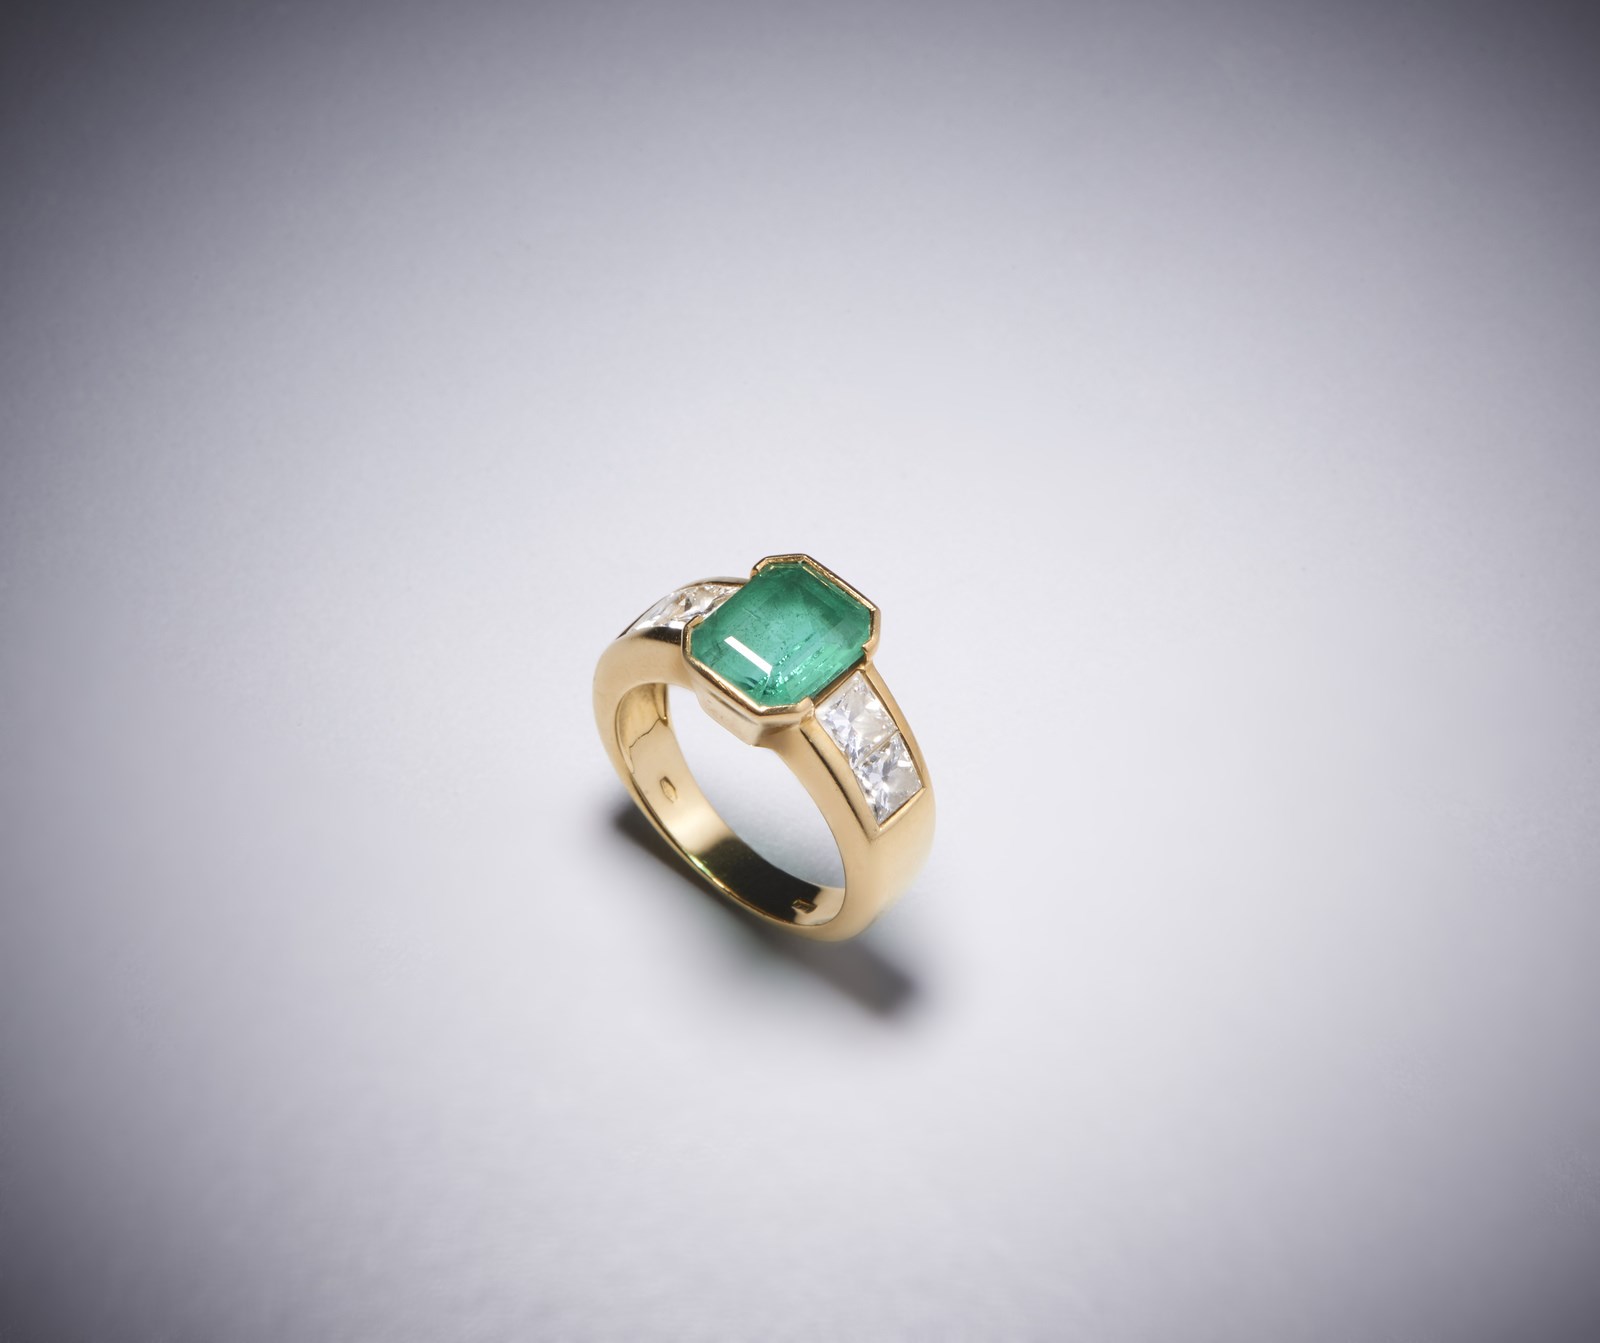 Un anello in oro giallo 750/1000 con smeraldo colombiano centrale  2,50 CT. con contorno di diamanti bianchi  taglio princess, 1,30 ct.circa. (. )